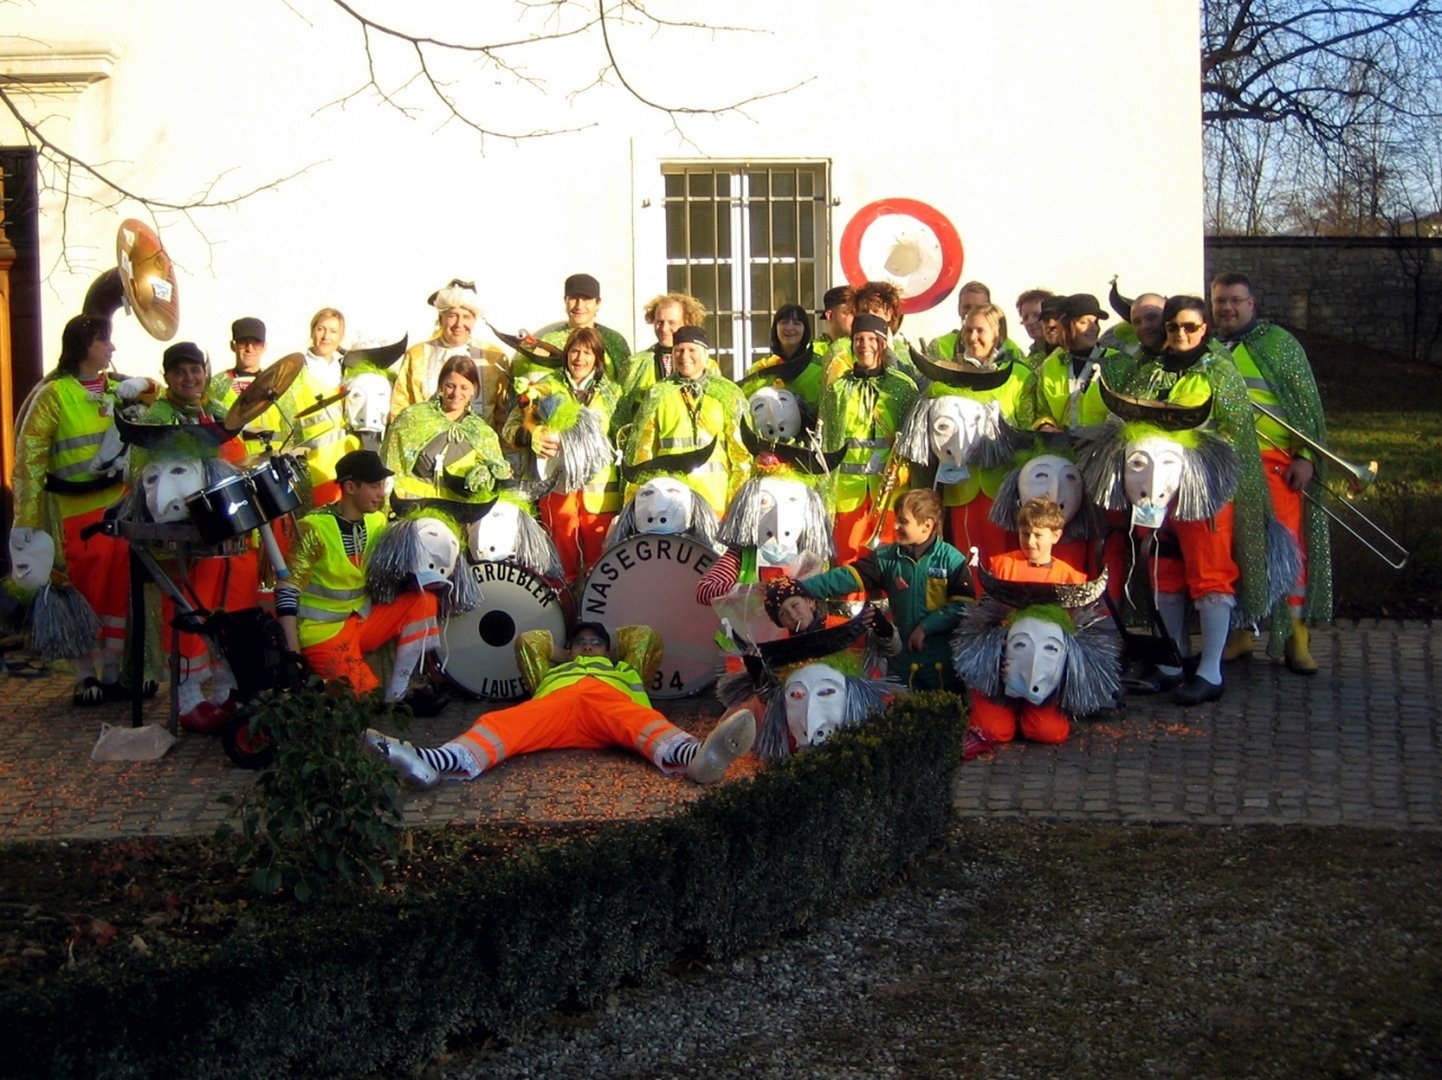 2008 - Carnevale in Laufen